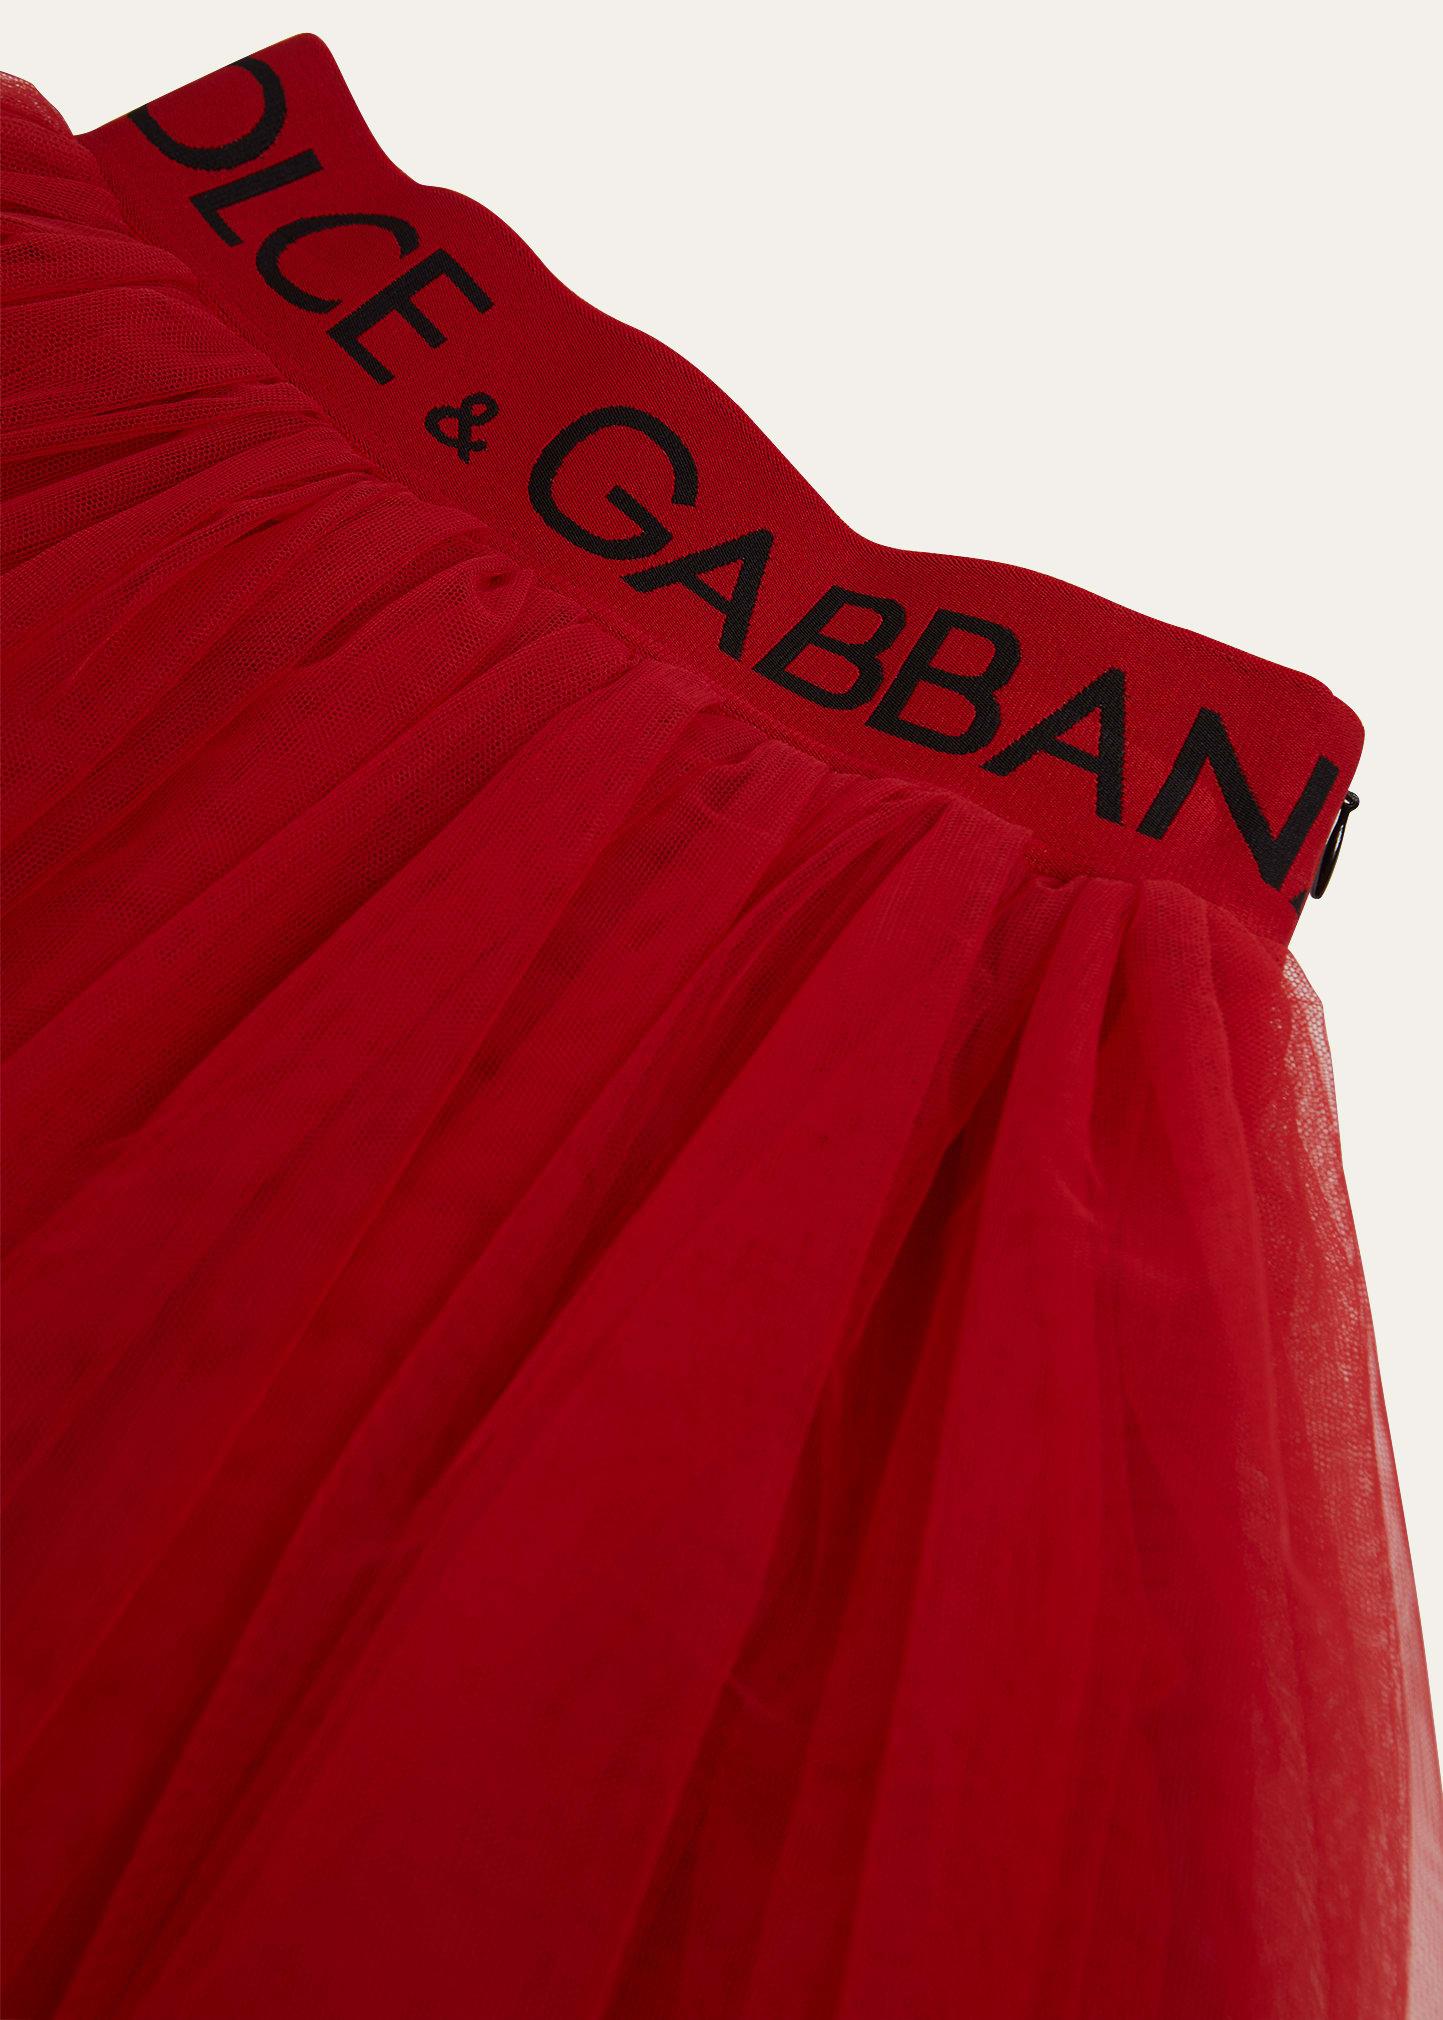 Dolce & Gabbana - Girls Red Tulle DG Logo Dress